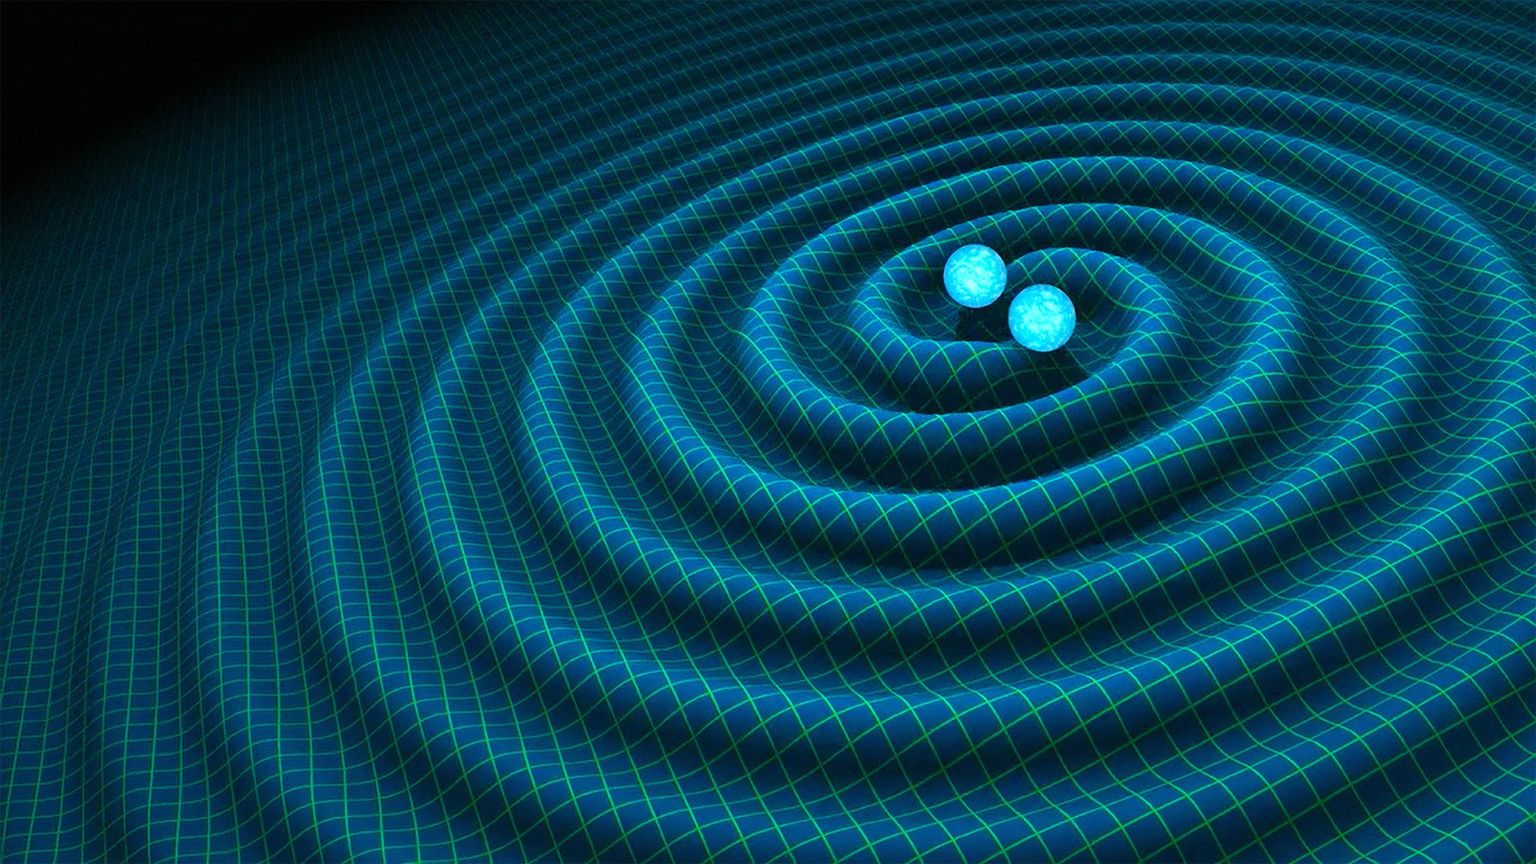 Kunstniku kujutis neutrontähtede kokkupõrkel tekkivatest gravitatsioonilainetest.